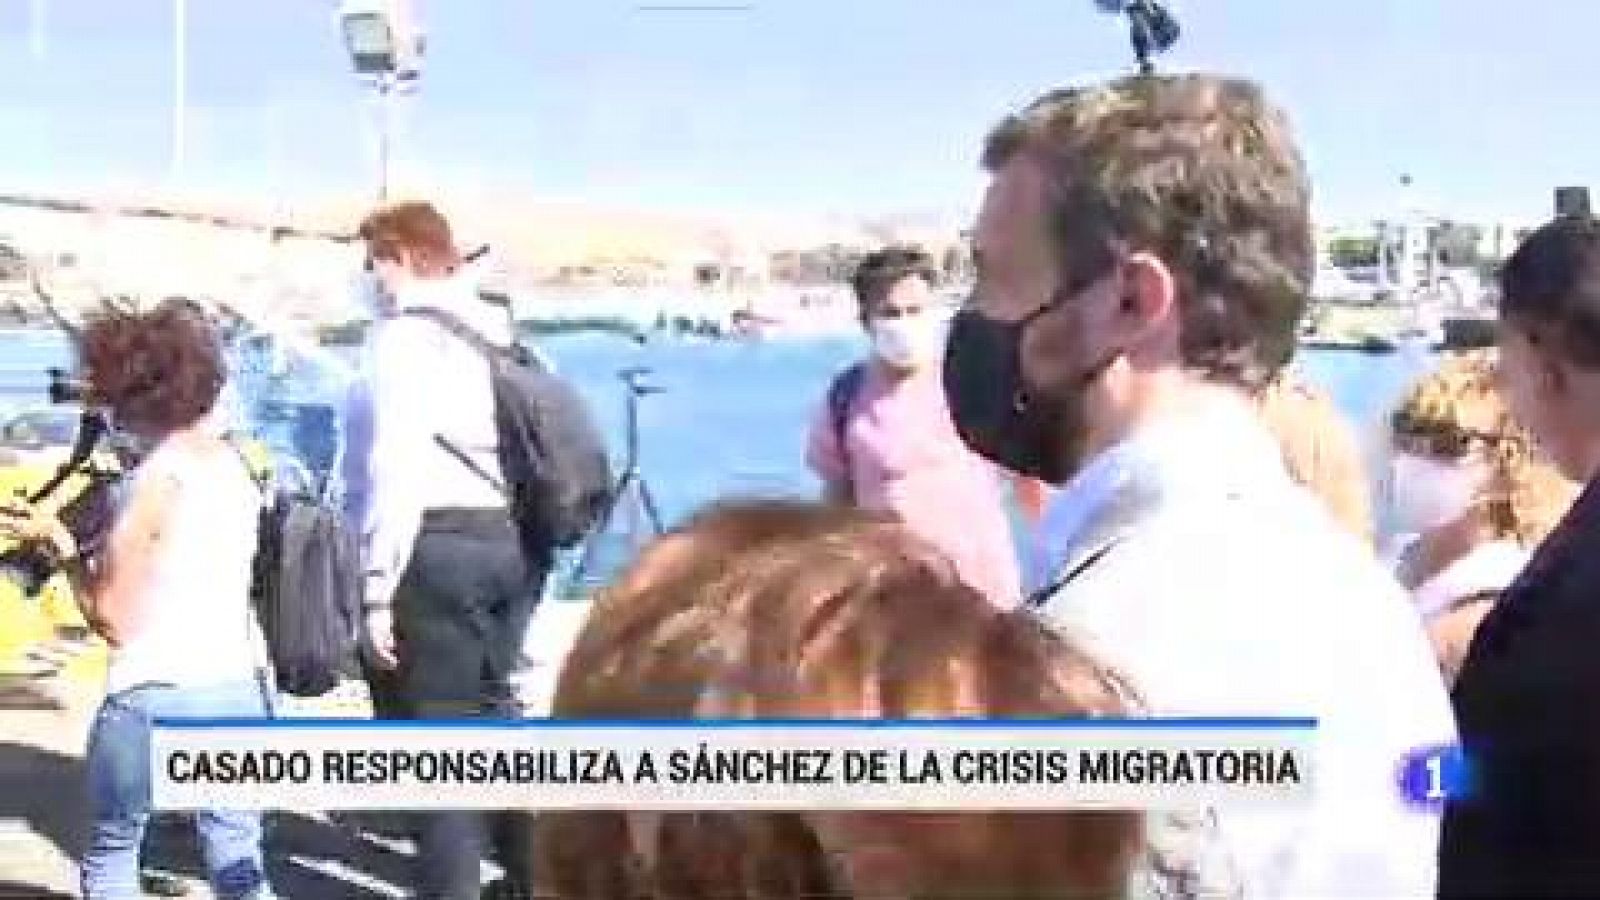 Casado responsabiliza a Sánchez de la crisis migratoria en Canarias